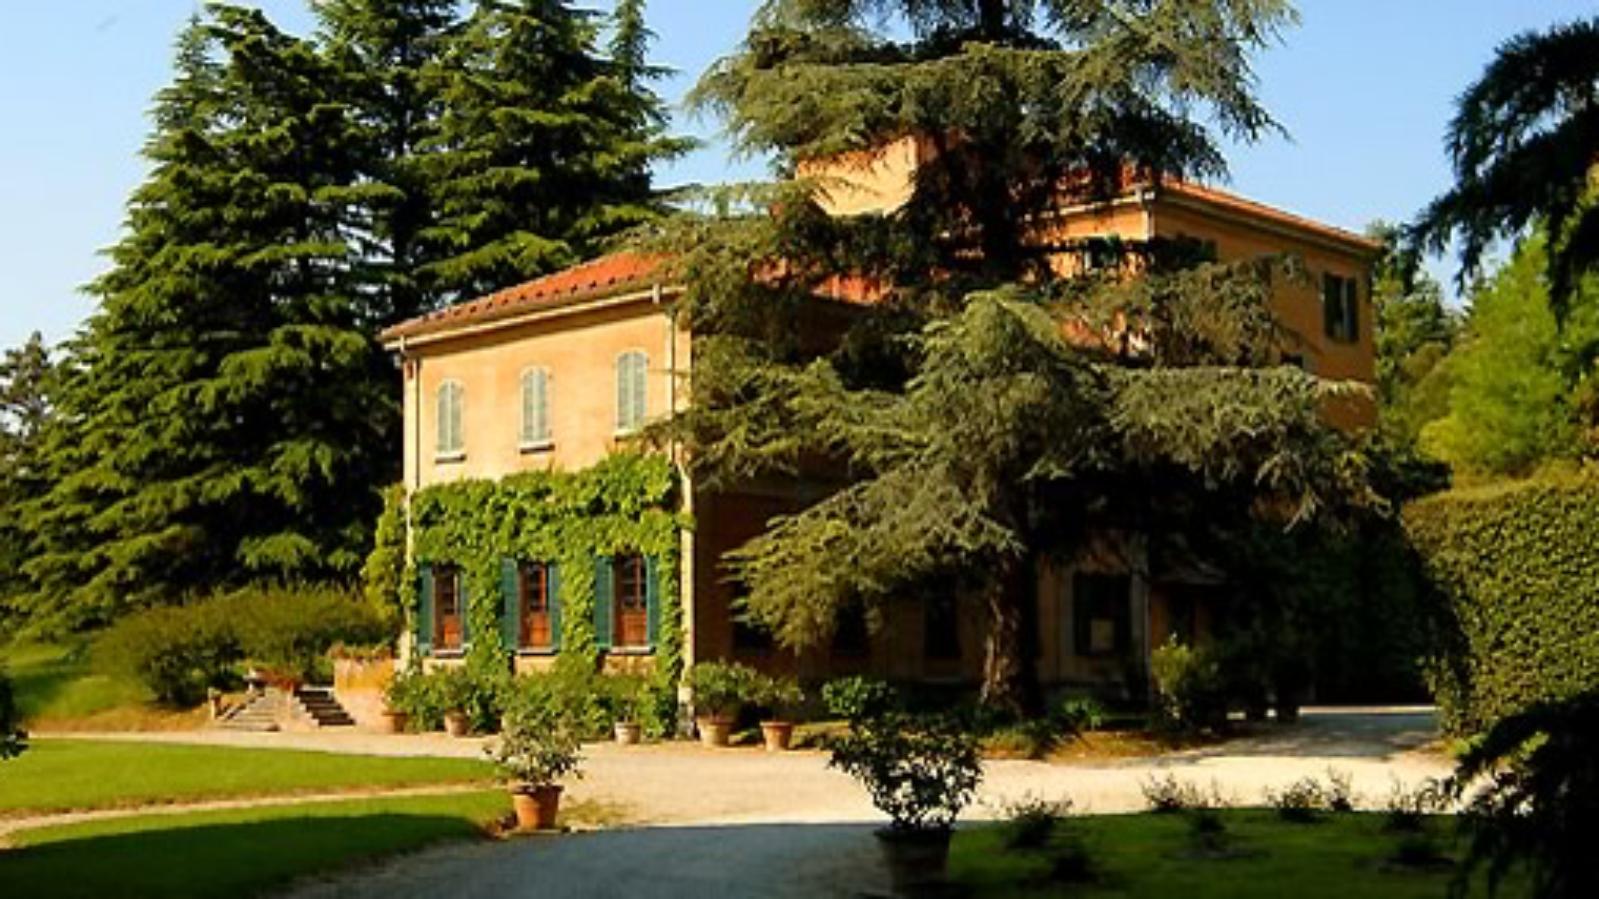 Azienda agricola Tizzano - Villa Marescalchi